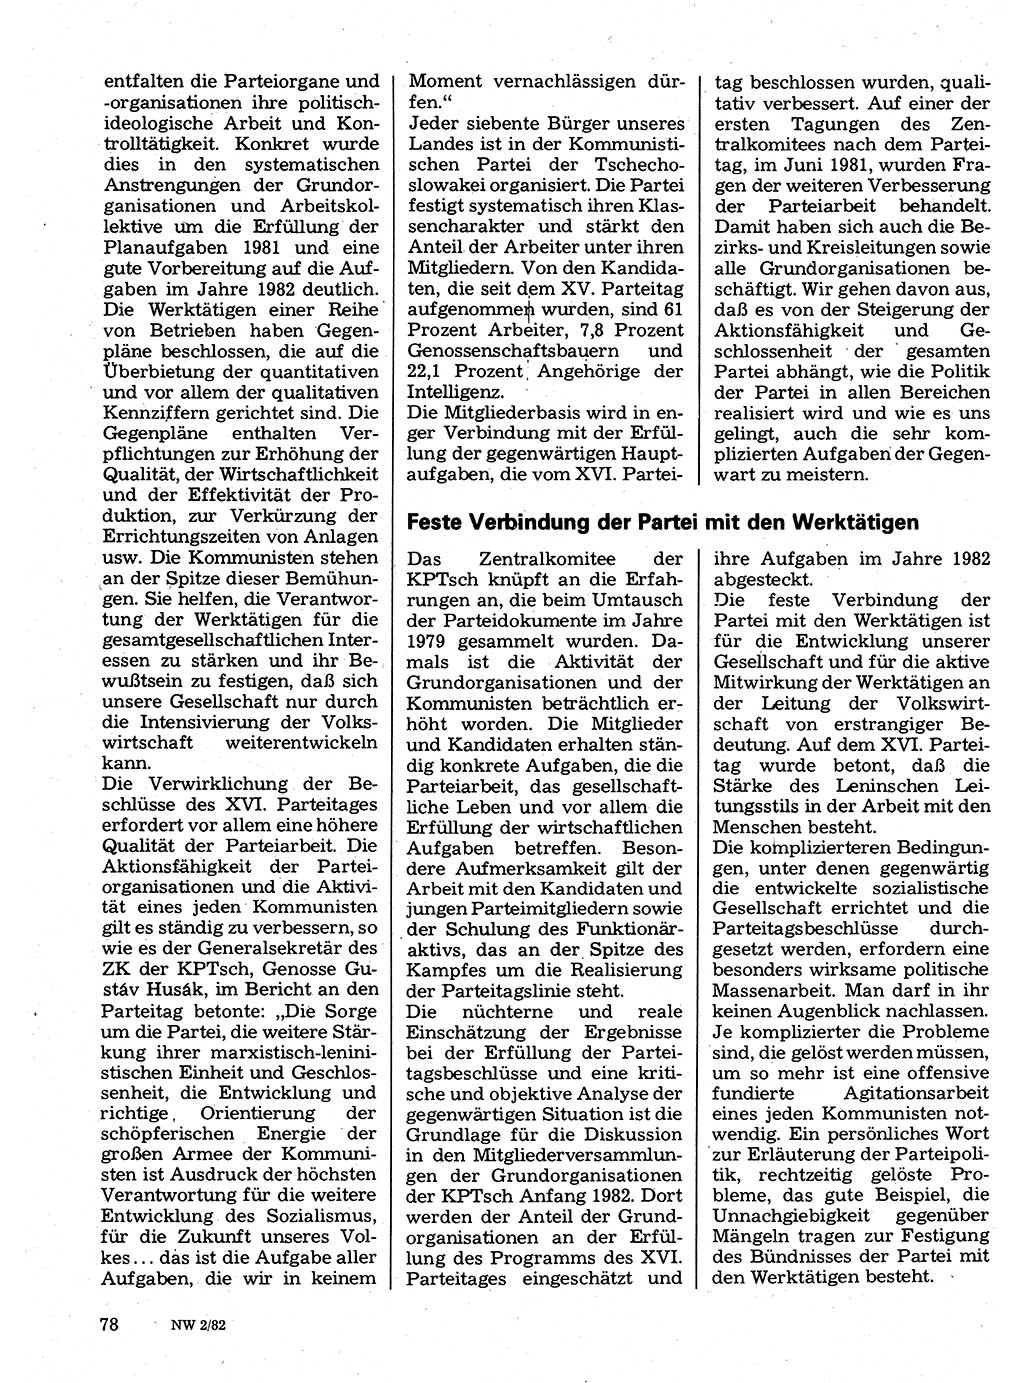 Neuer Weg (NW), Organ des Zentralkomitees (ZK) der SED (Sozialistische Einheitspartei Deutschlands) für Fragen des Parteilebens, 37. Jahrgang [Deutsche Demokratische Republik (DDR)] 1982, Seite 78 (NW ZK SED DDR 1982, S. 78)